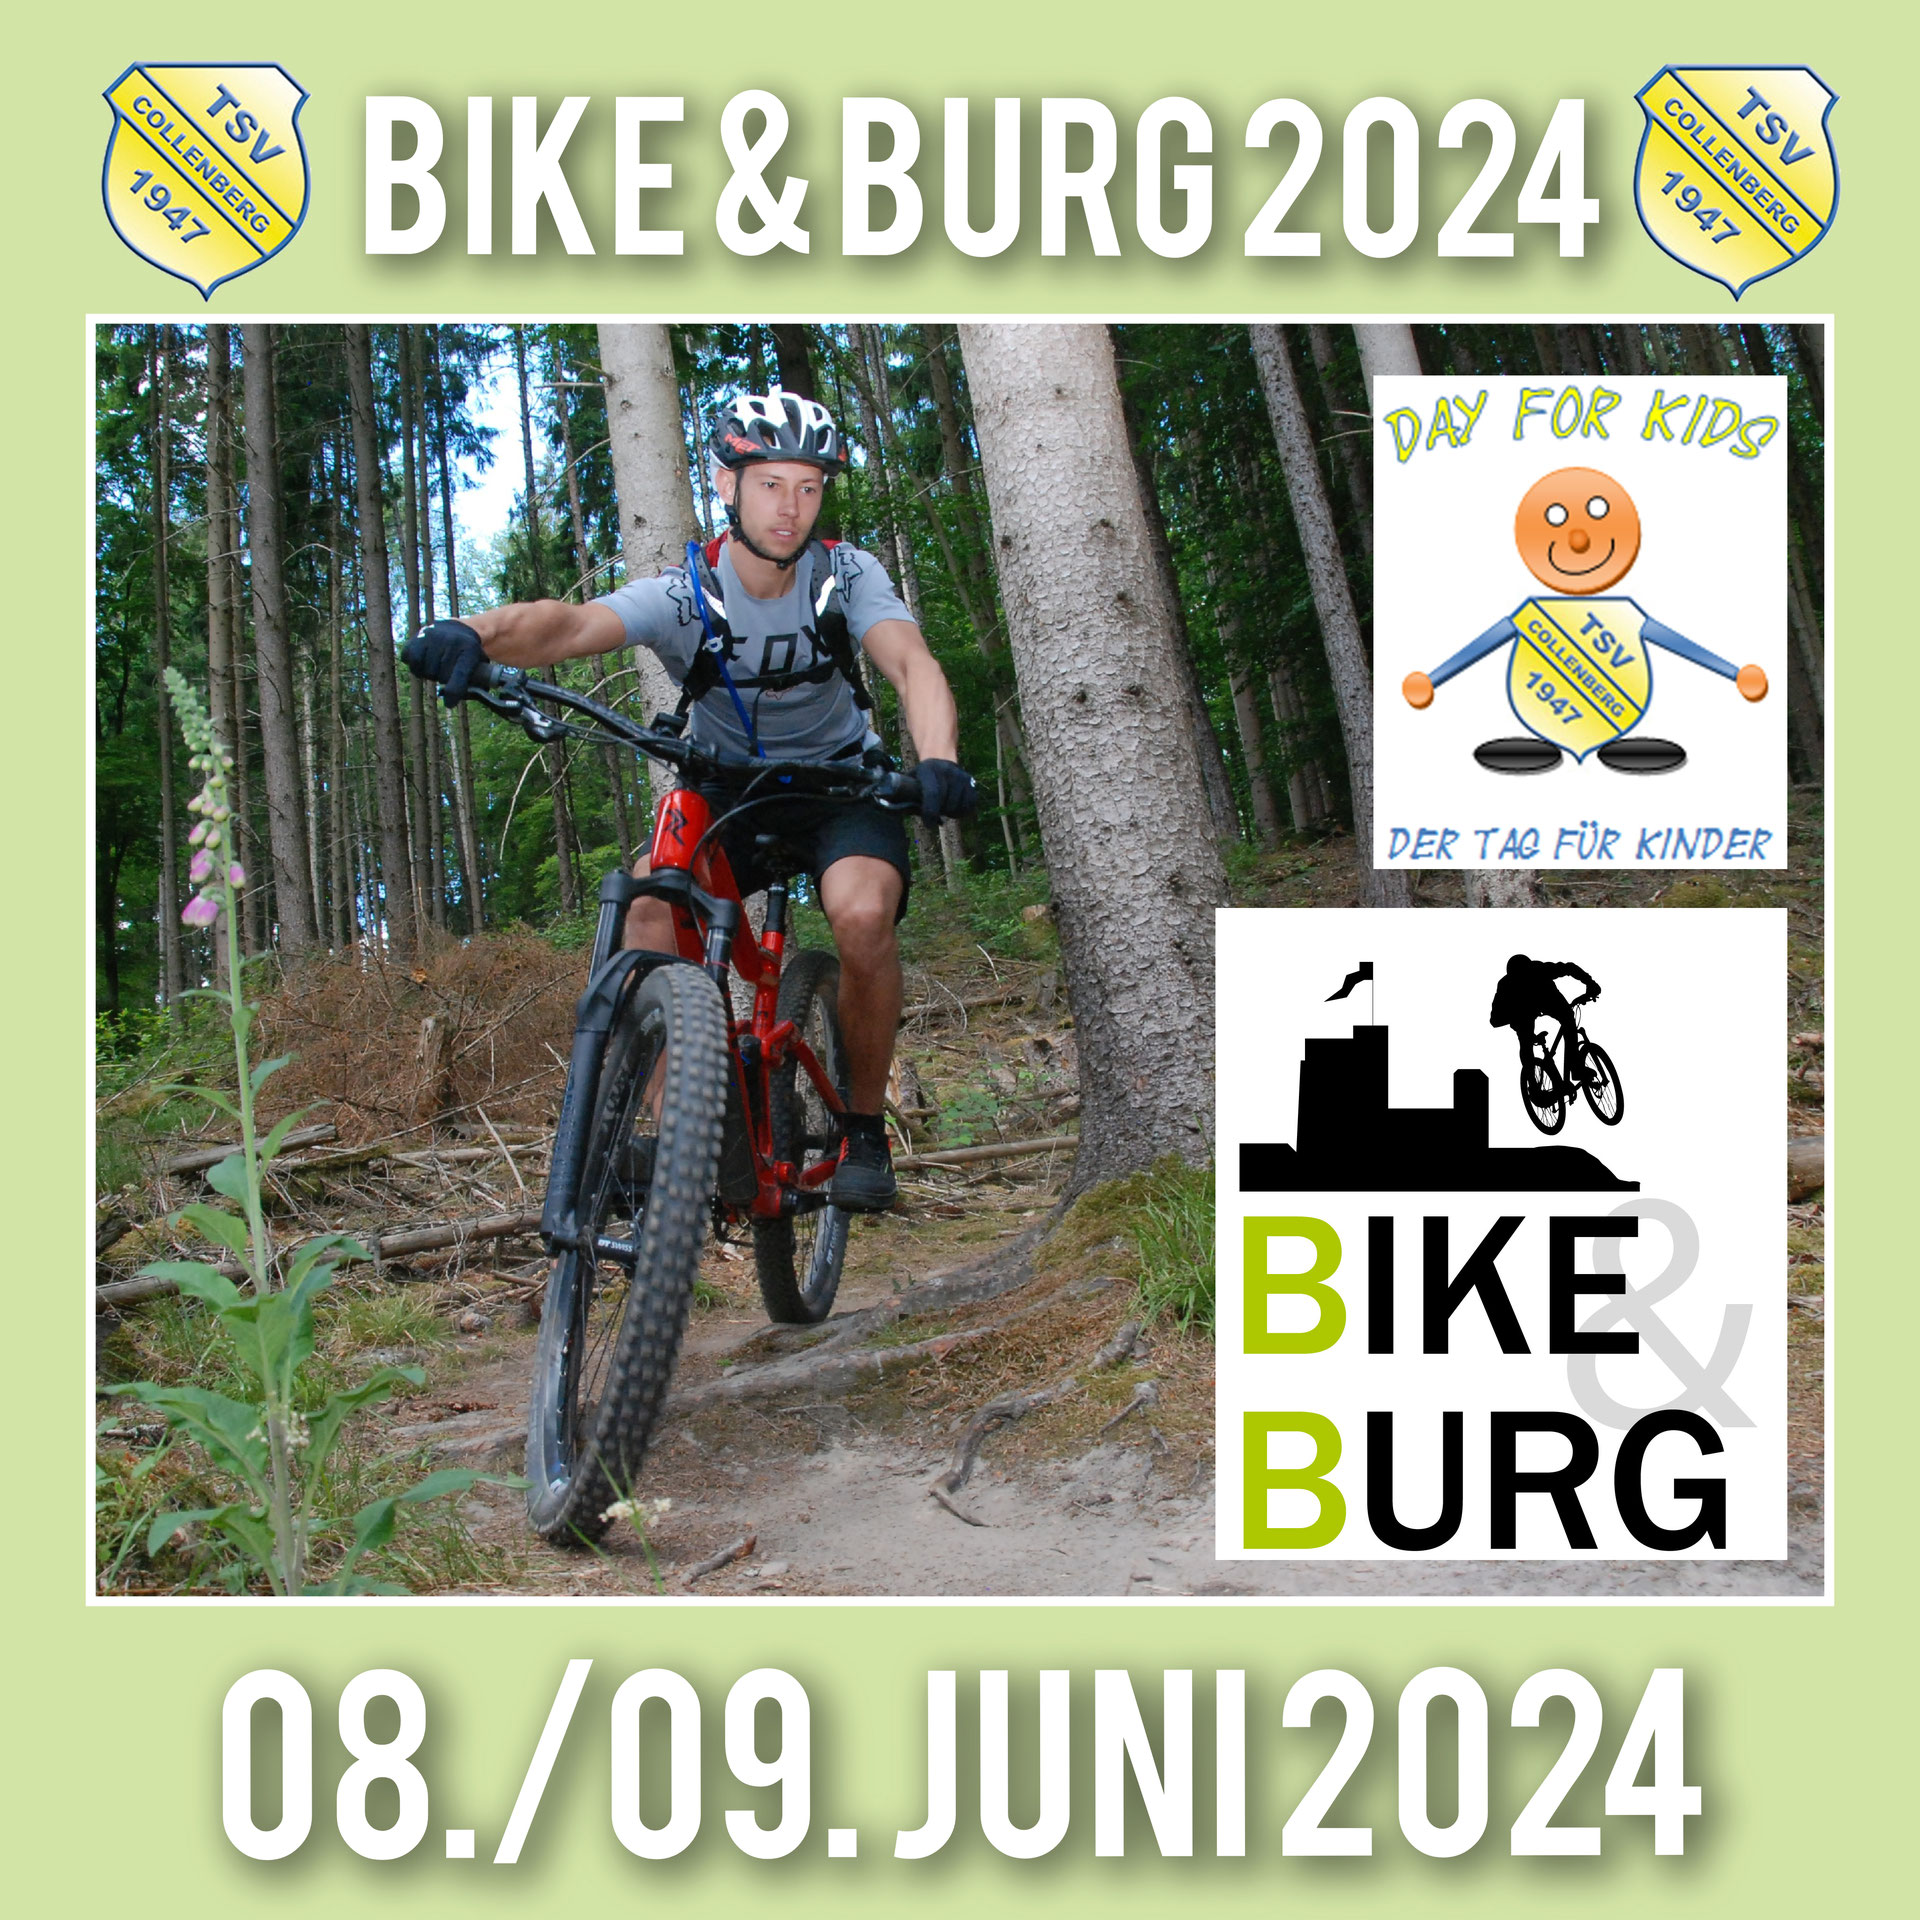 (c) Bike-und-burg.de